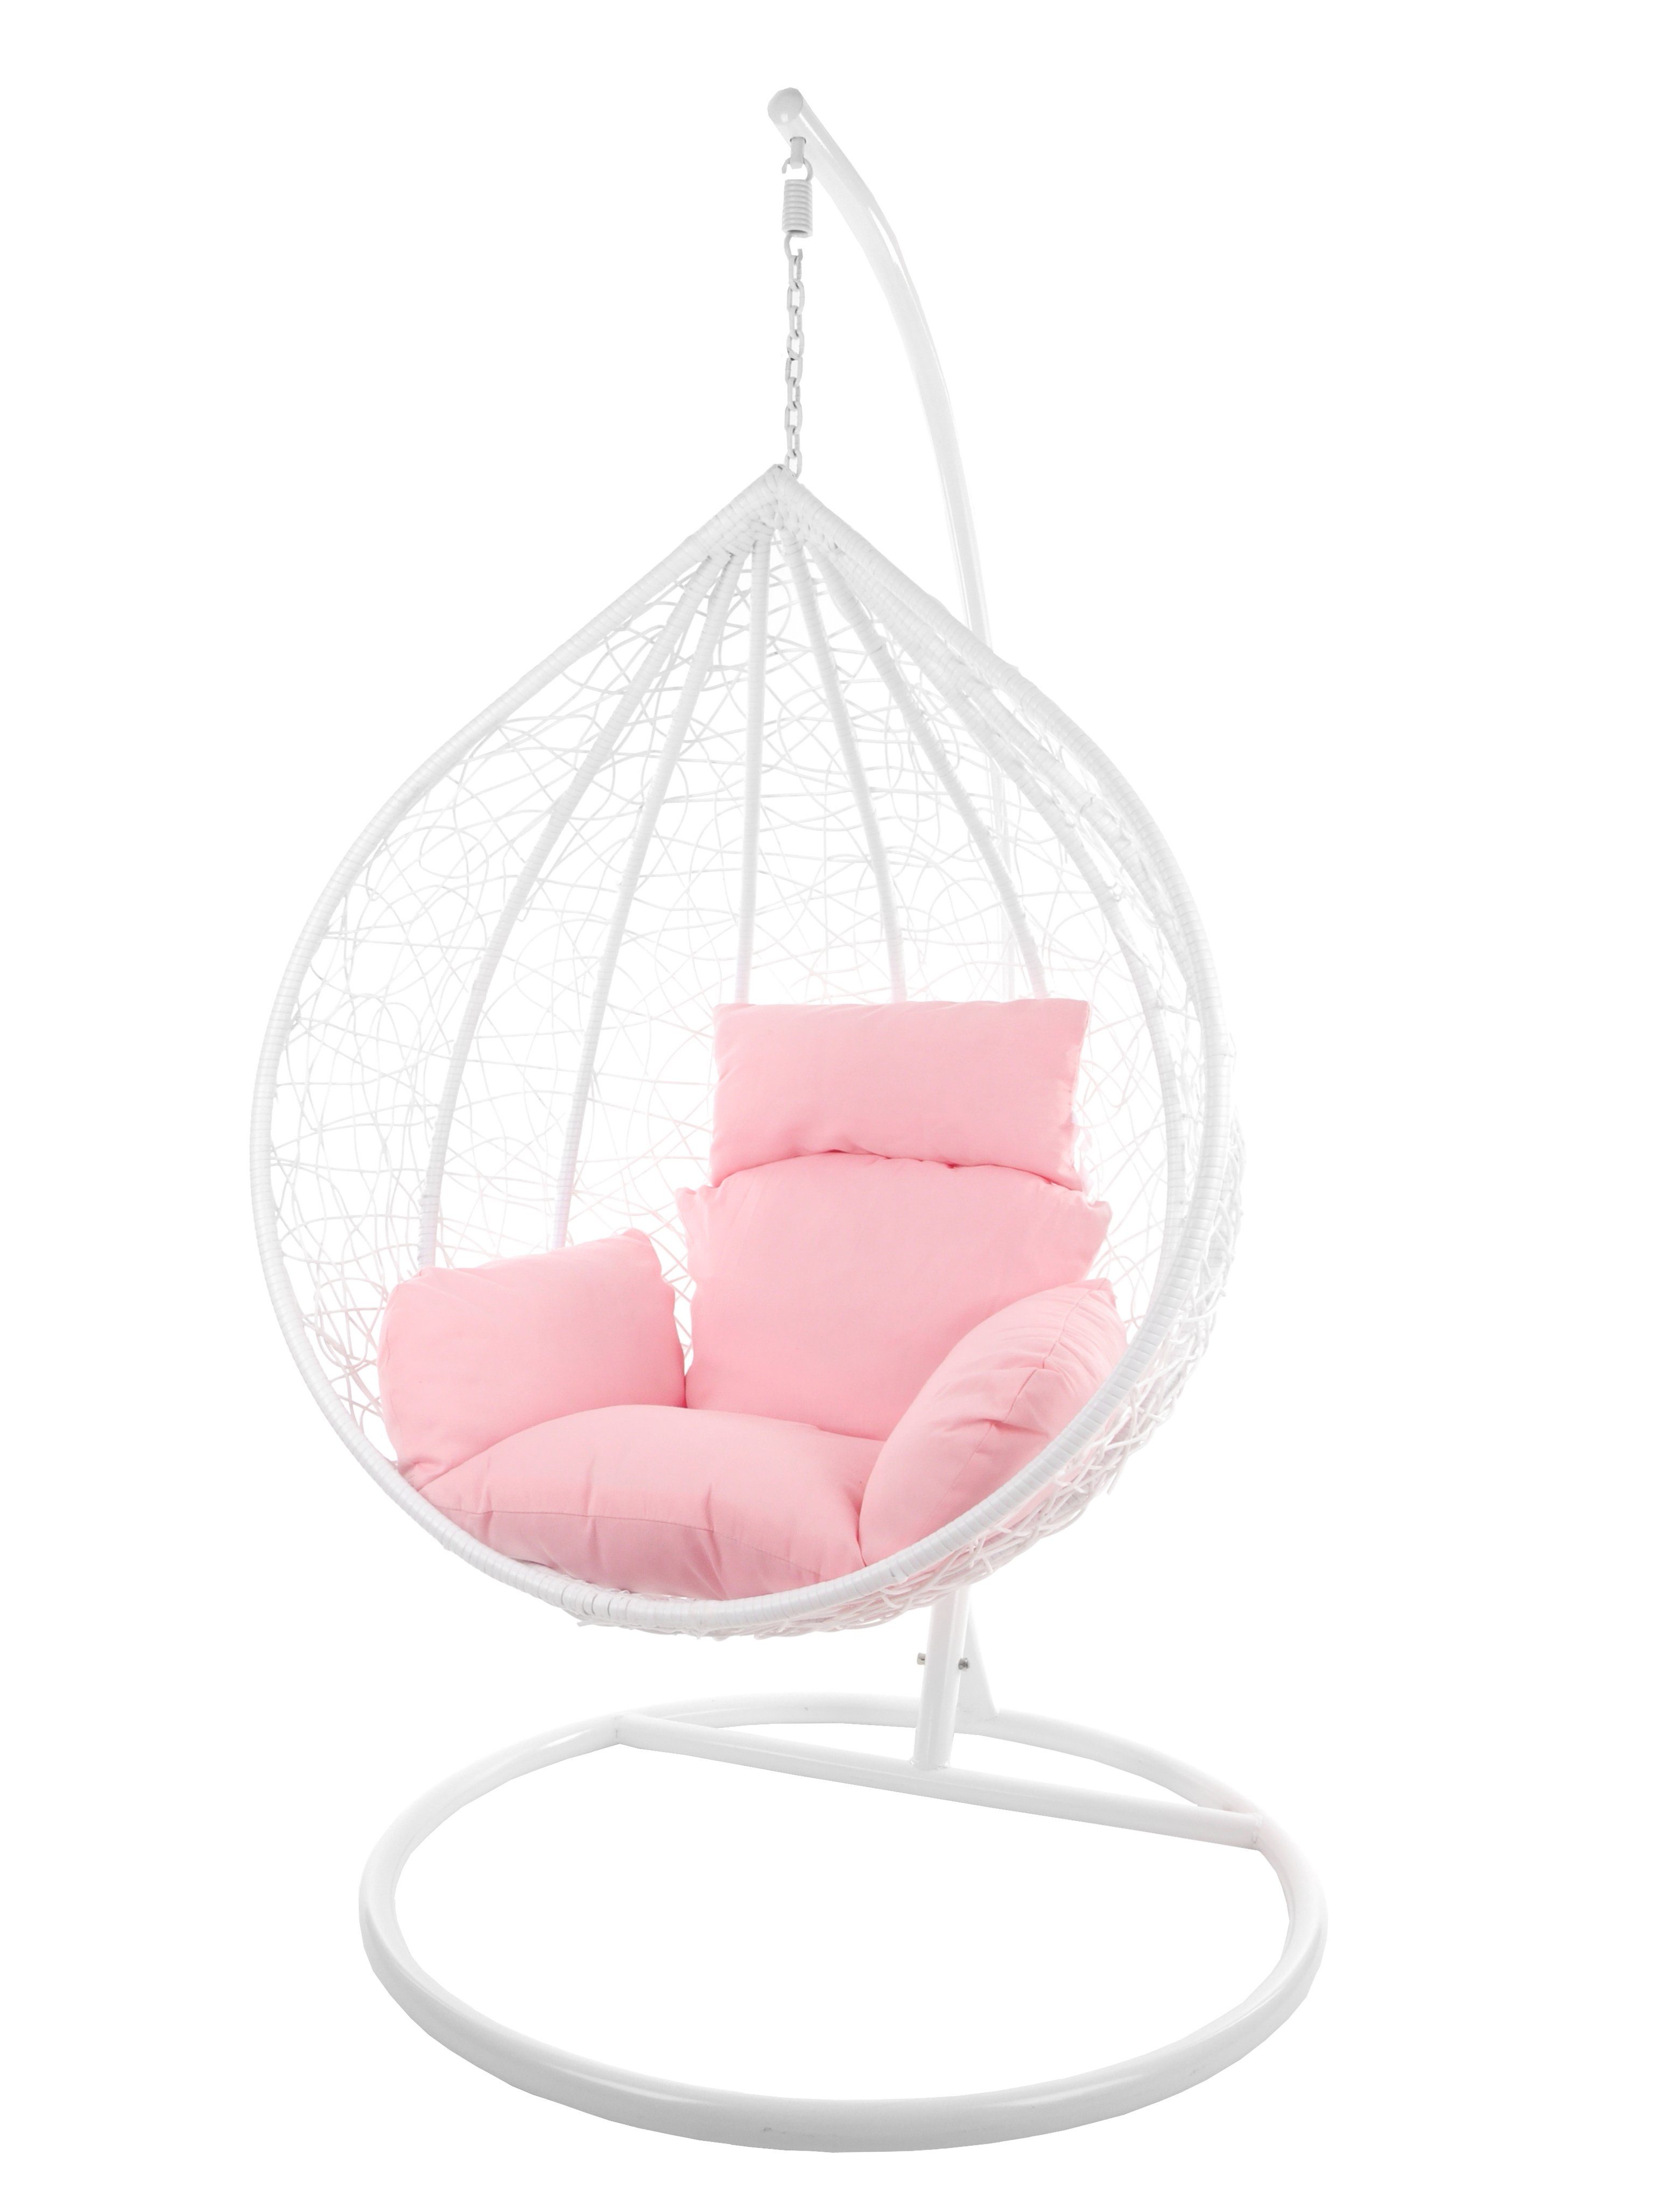 KIDEO Hängesessel Hängesessel MANACOR weiß, XXL Swing Chair, großer Hängesessel mit Gestell und Kissen, Loungemöbel, weiß rosa (3002 lemonade)